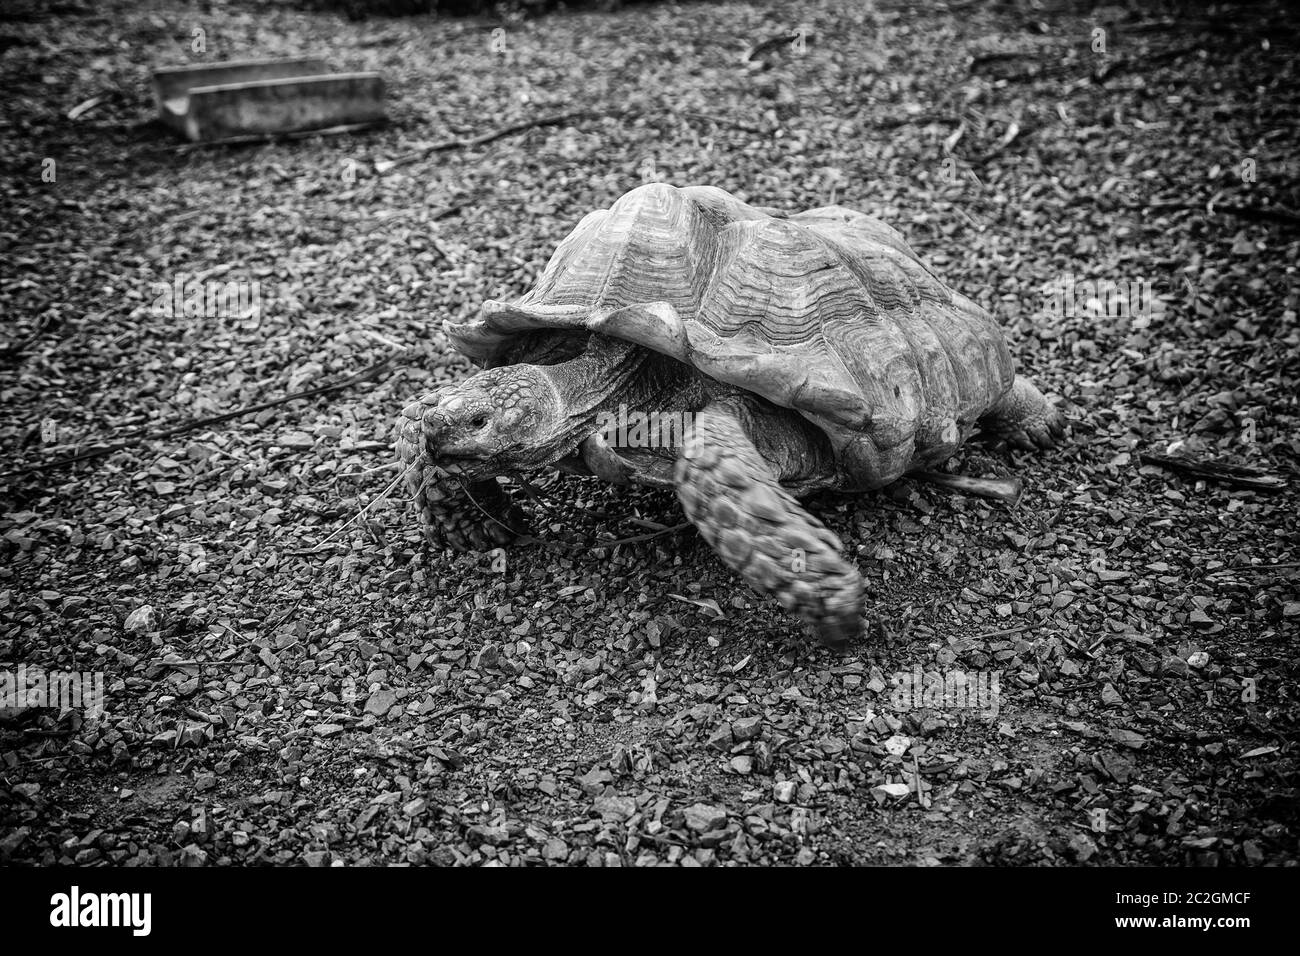 Des tortues sauvages, d'animaux sauvages exotiques Banque D'Images